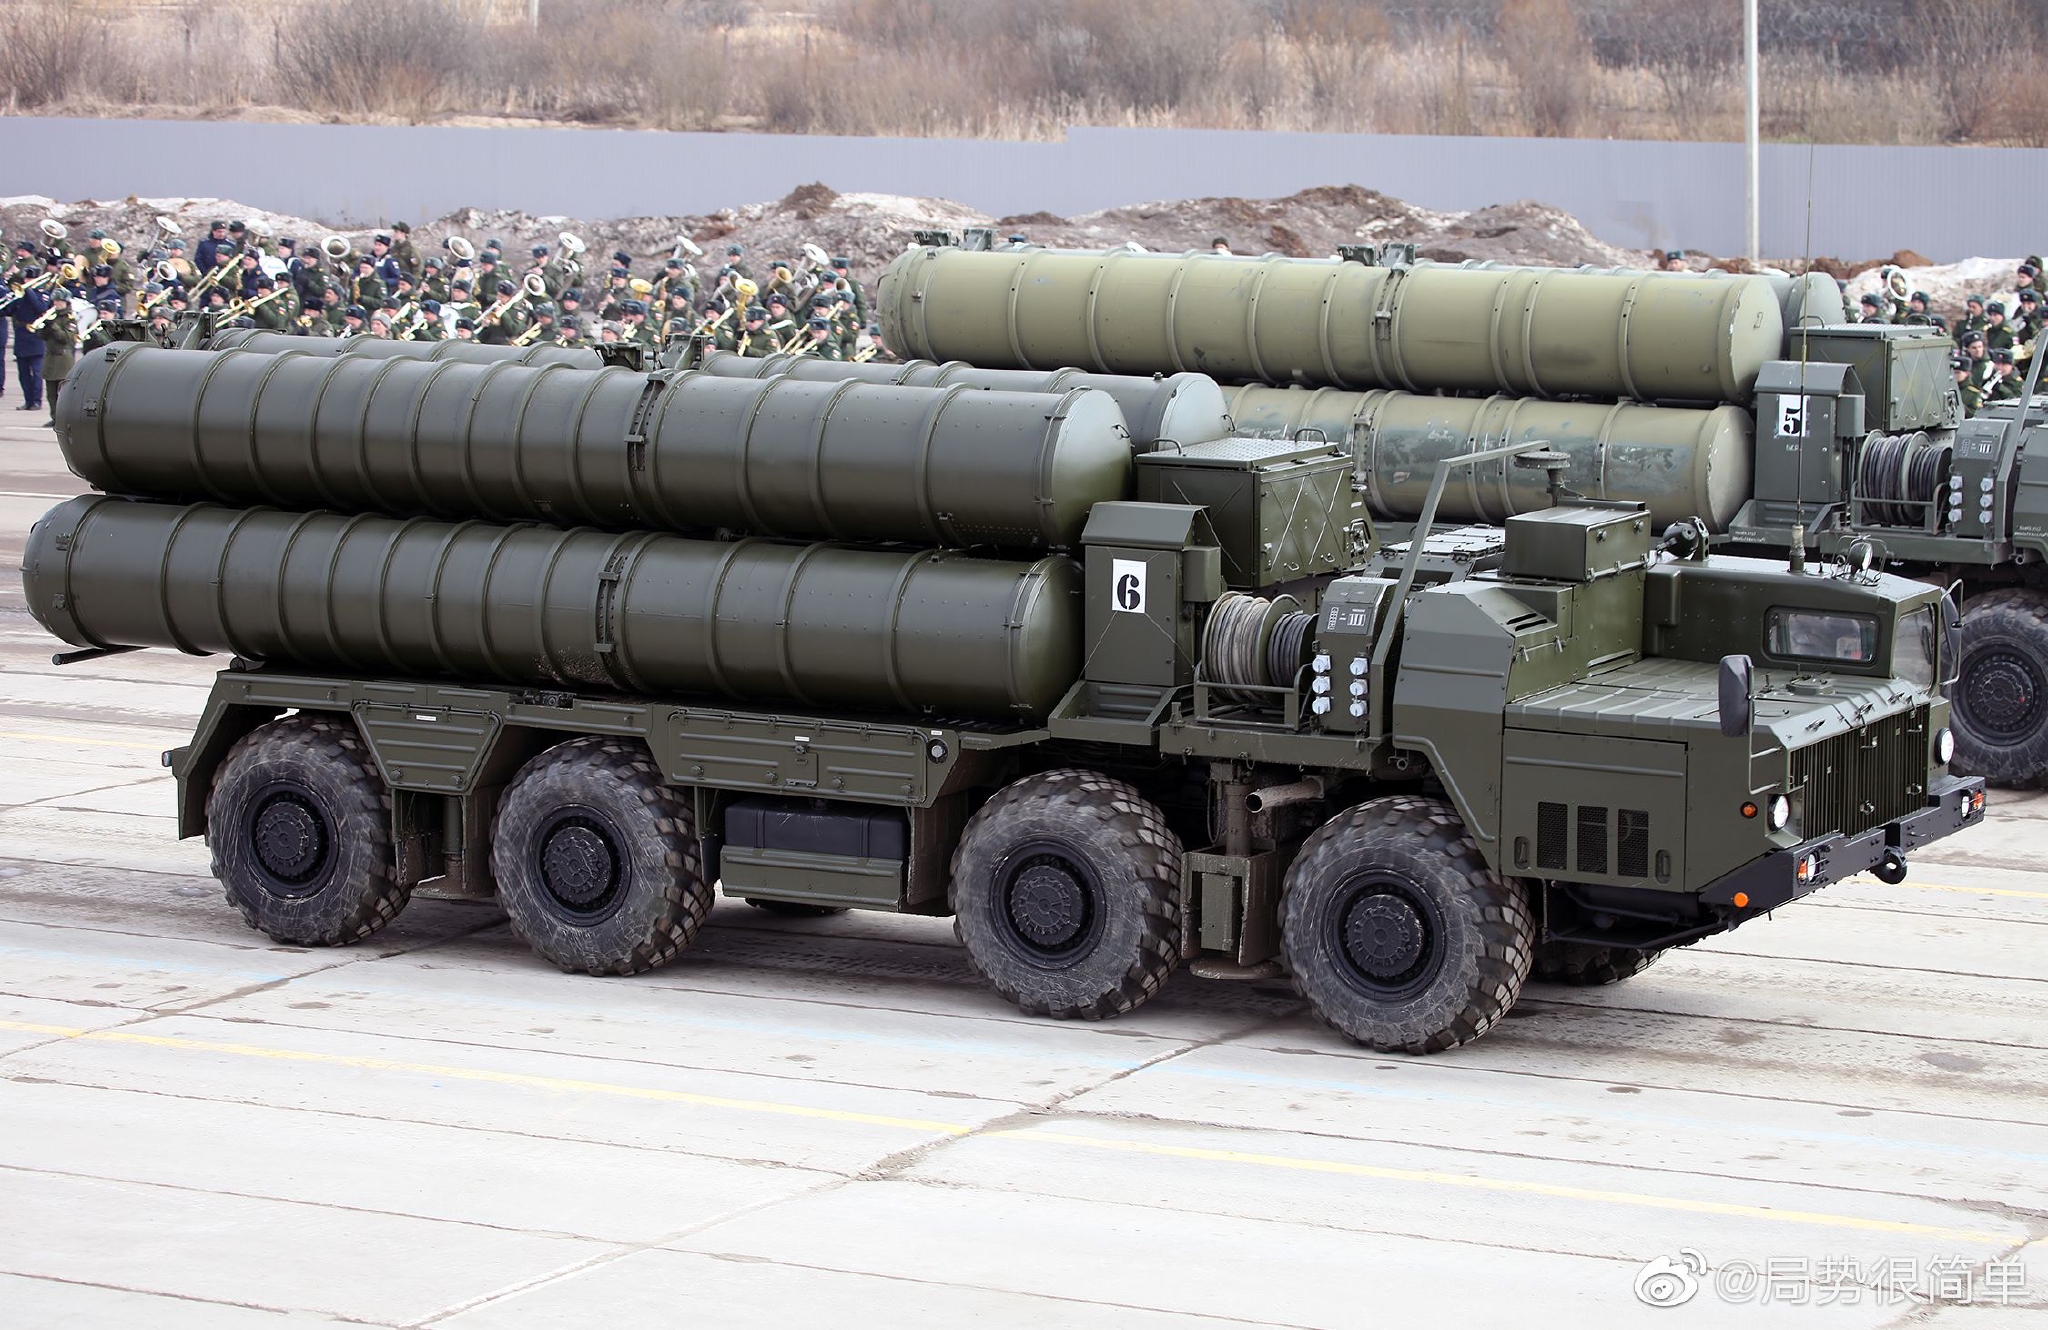 俄罗斯在加里宁格勒举行大规模军演 动用弹道导弹、战斗机等重装备